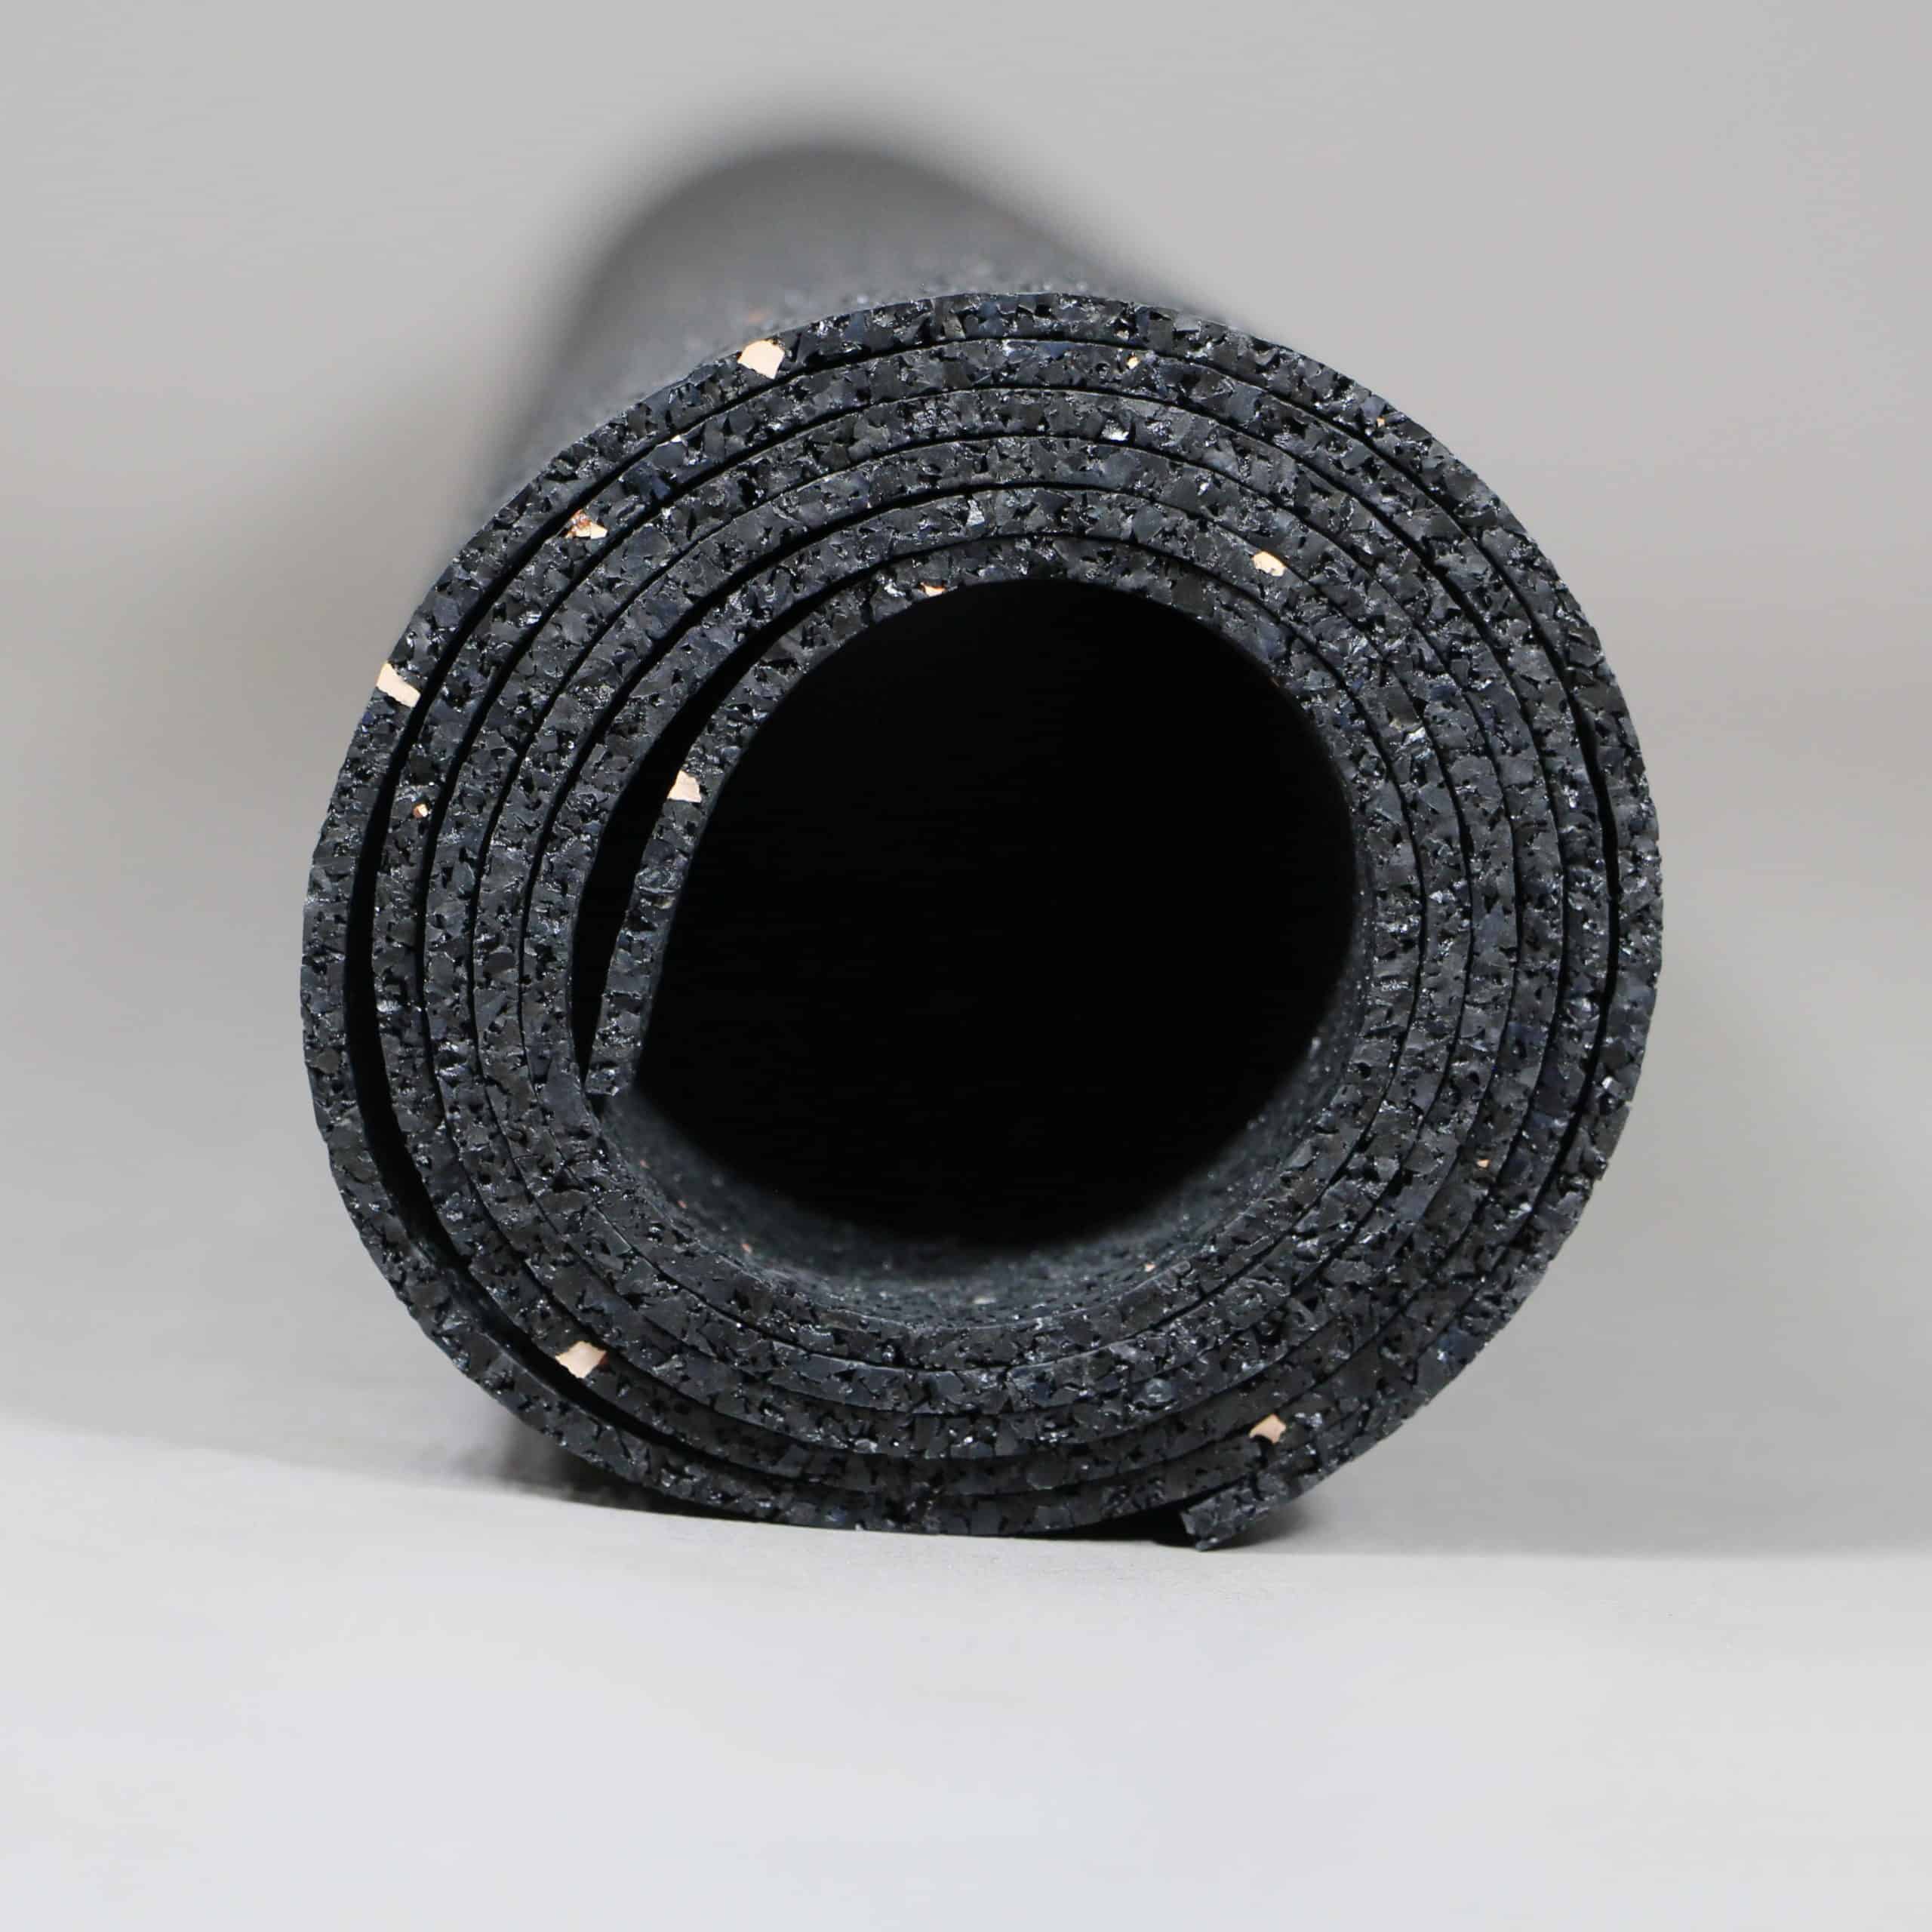 Anti-Rutsch-Matte aus Gummi, schwarz, Gleitreibbeiwert 0,6